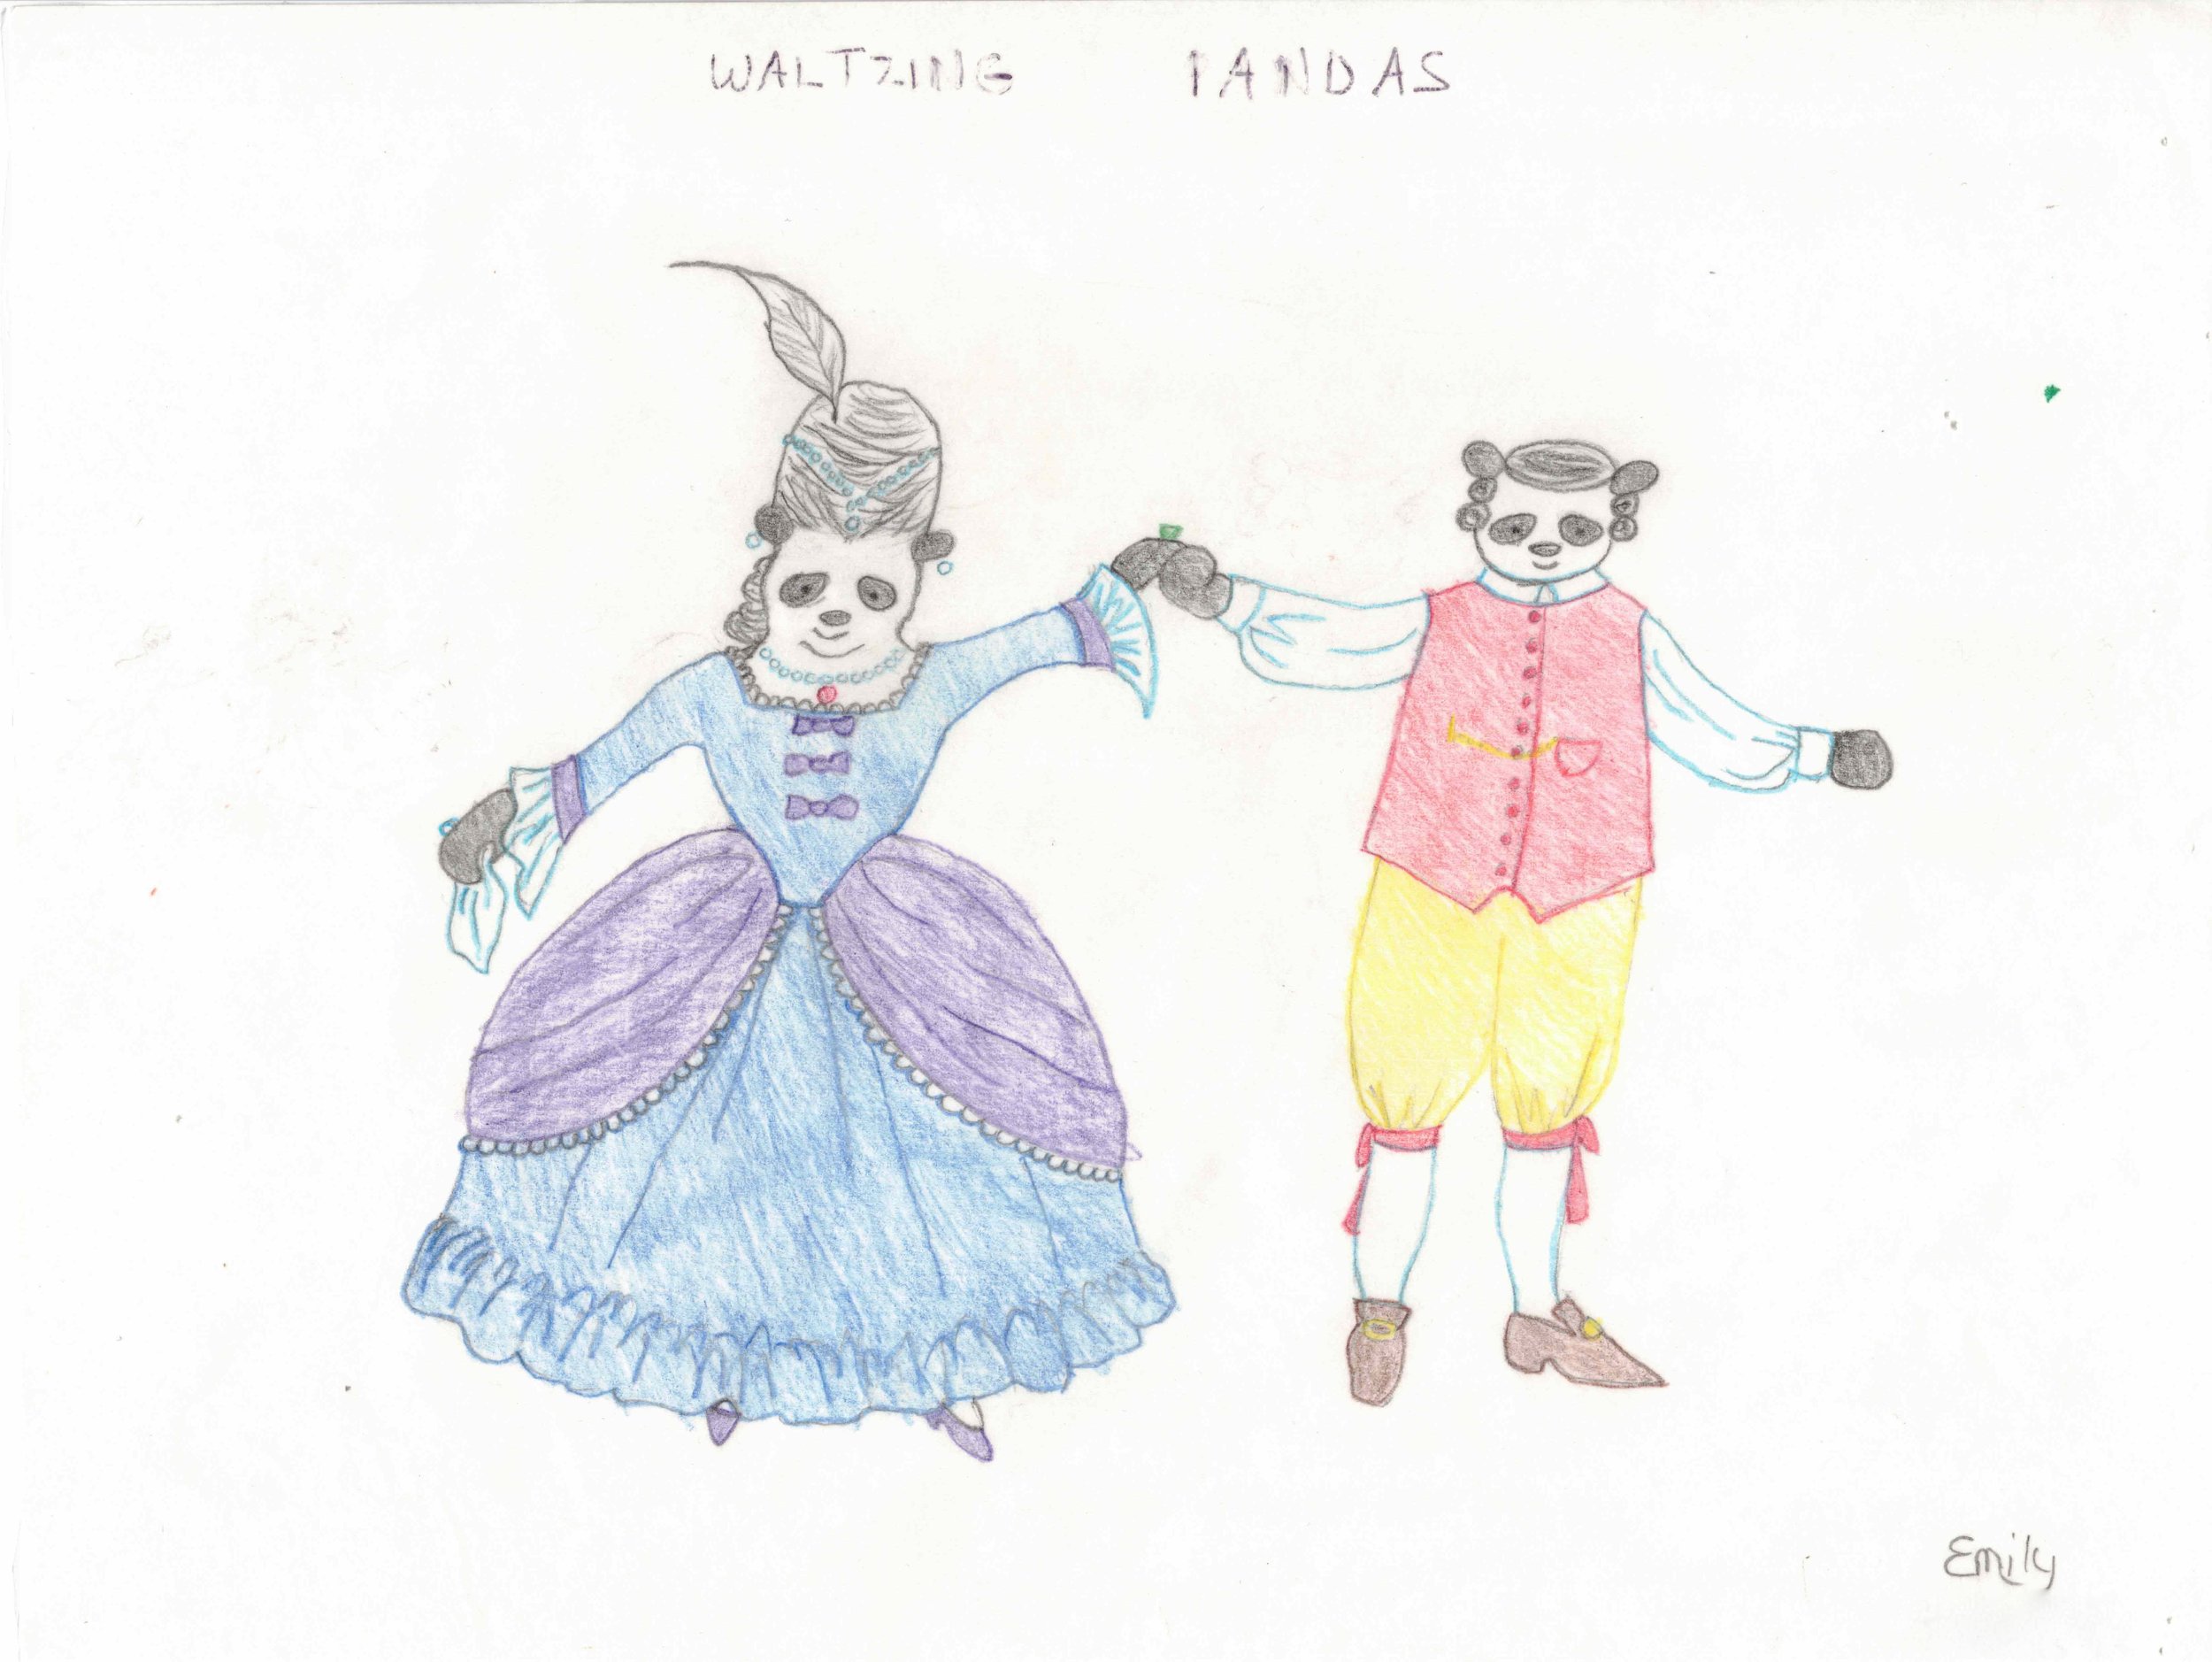 Waltzing Pandas 2